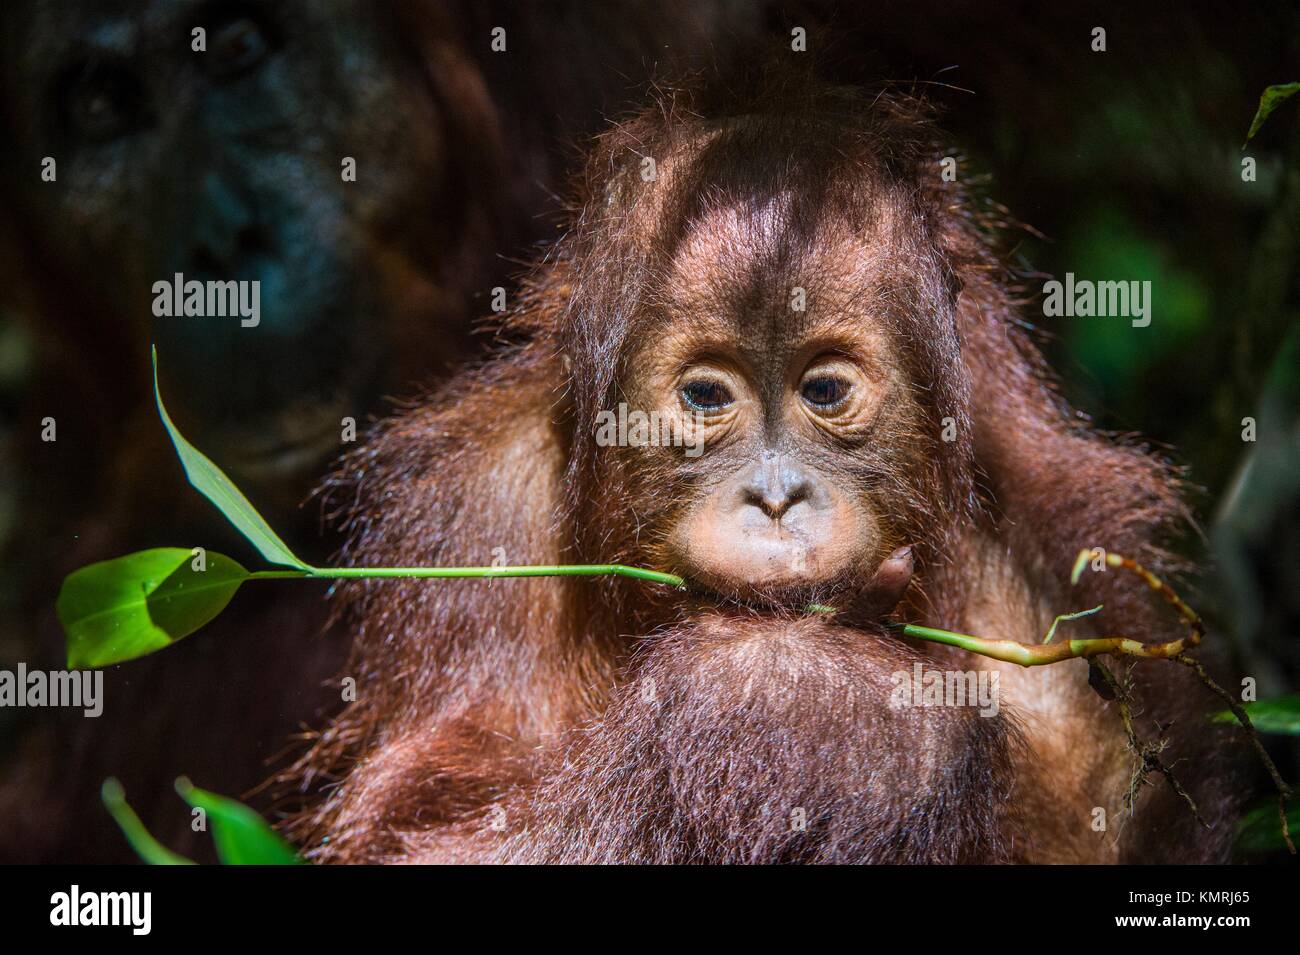 Bébé orang-outan (Pongo pygmaeus). Le portrait de cub f de l'orangutanon avec feuille verte sur le fond sombre. Orang-outan (Pongo py Banque D'Images